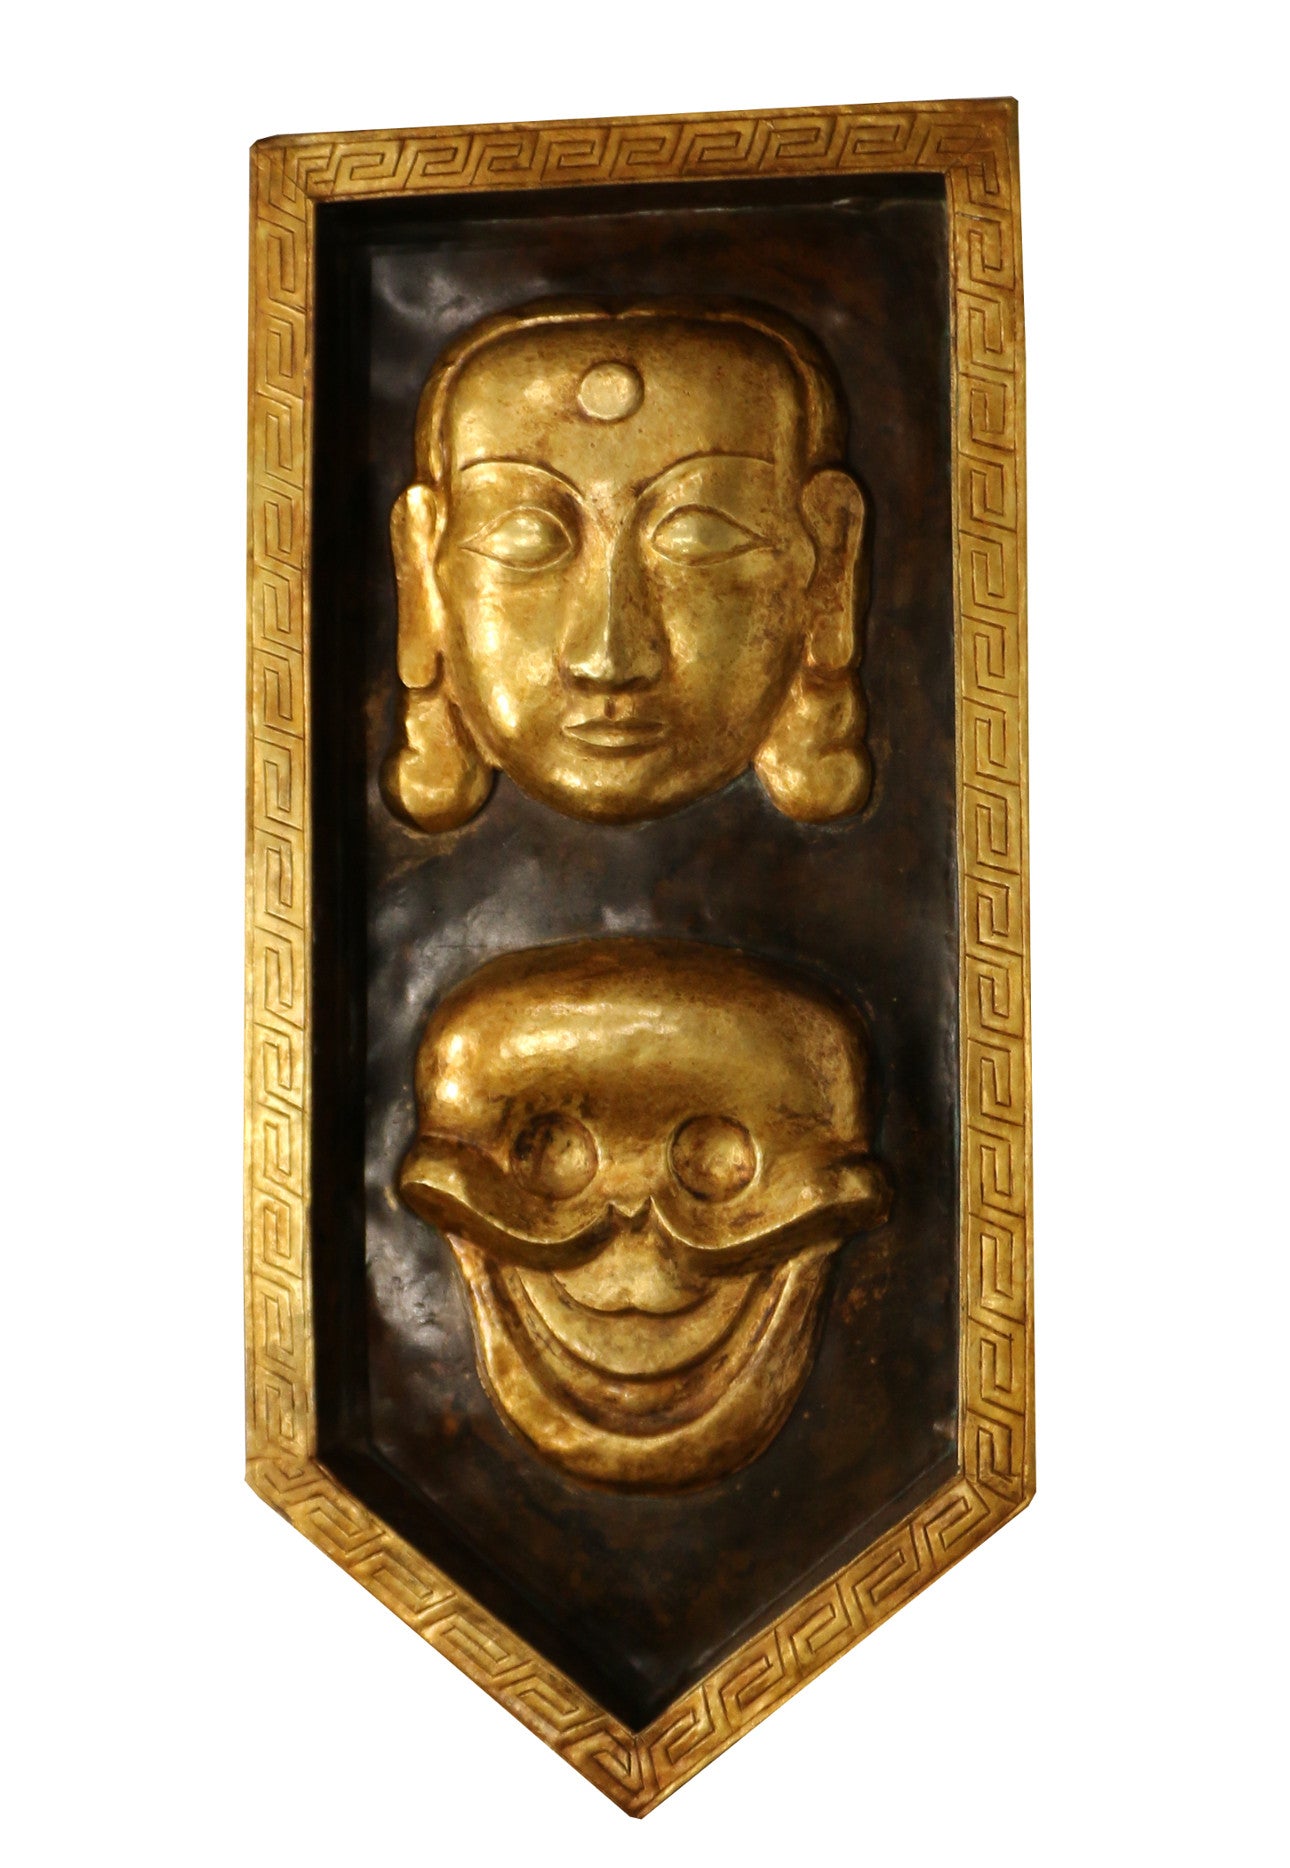 Tibetan Mask Wall decor gold gilded - Tibet Arts & Healing